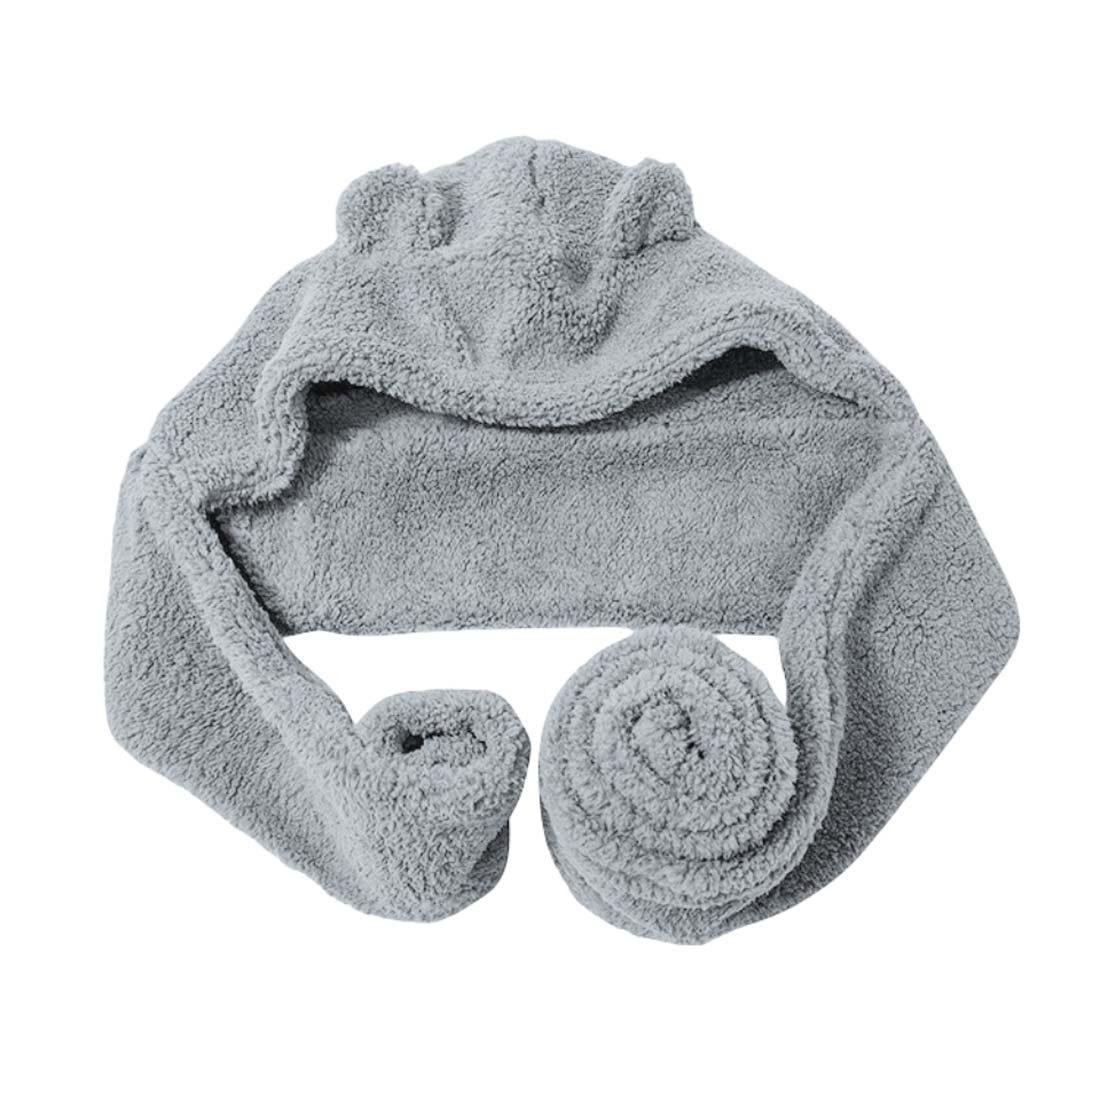 YANN Schlapphut Niedliches Mützen- und Schalsatz im Winter, dickes Set für Wärme Kinder, Erwachsene, warme Mützen grau